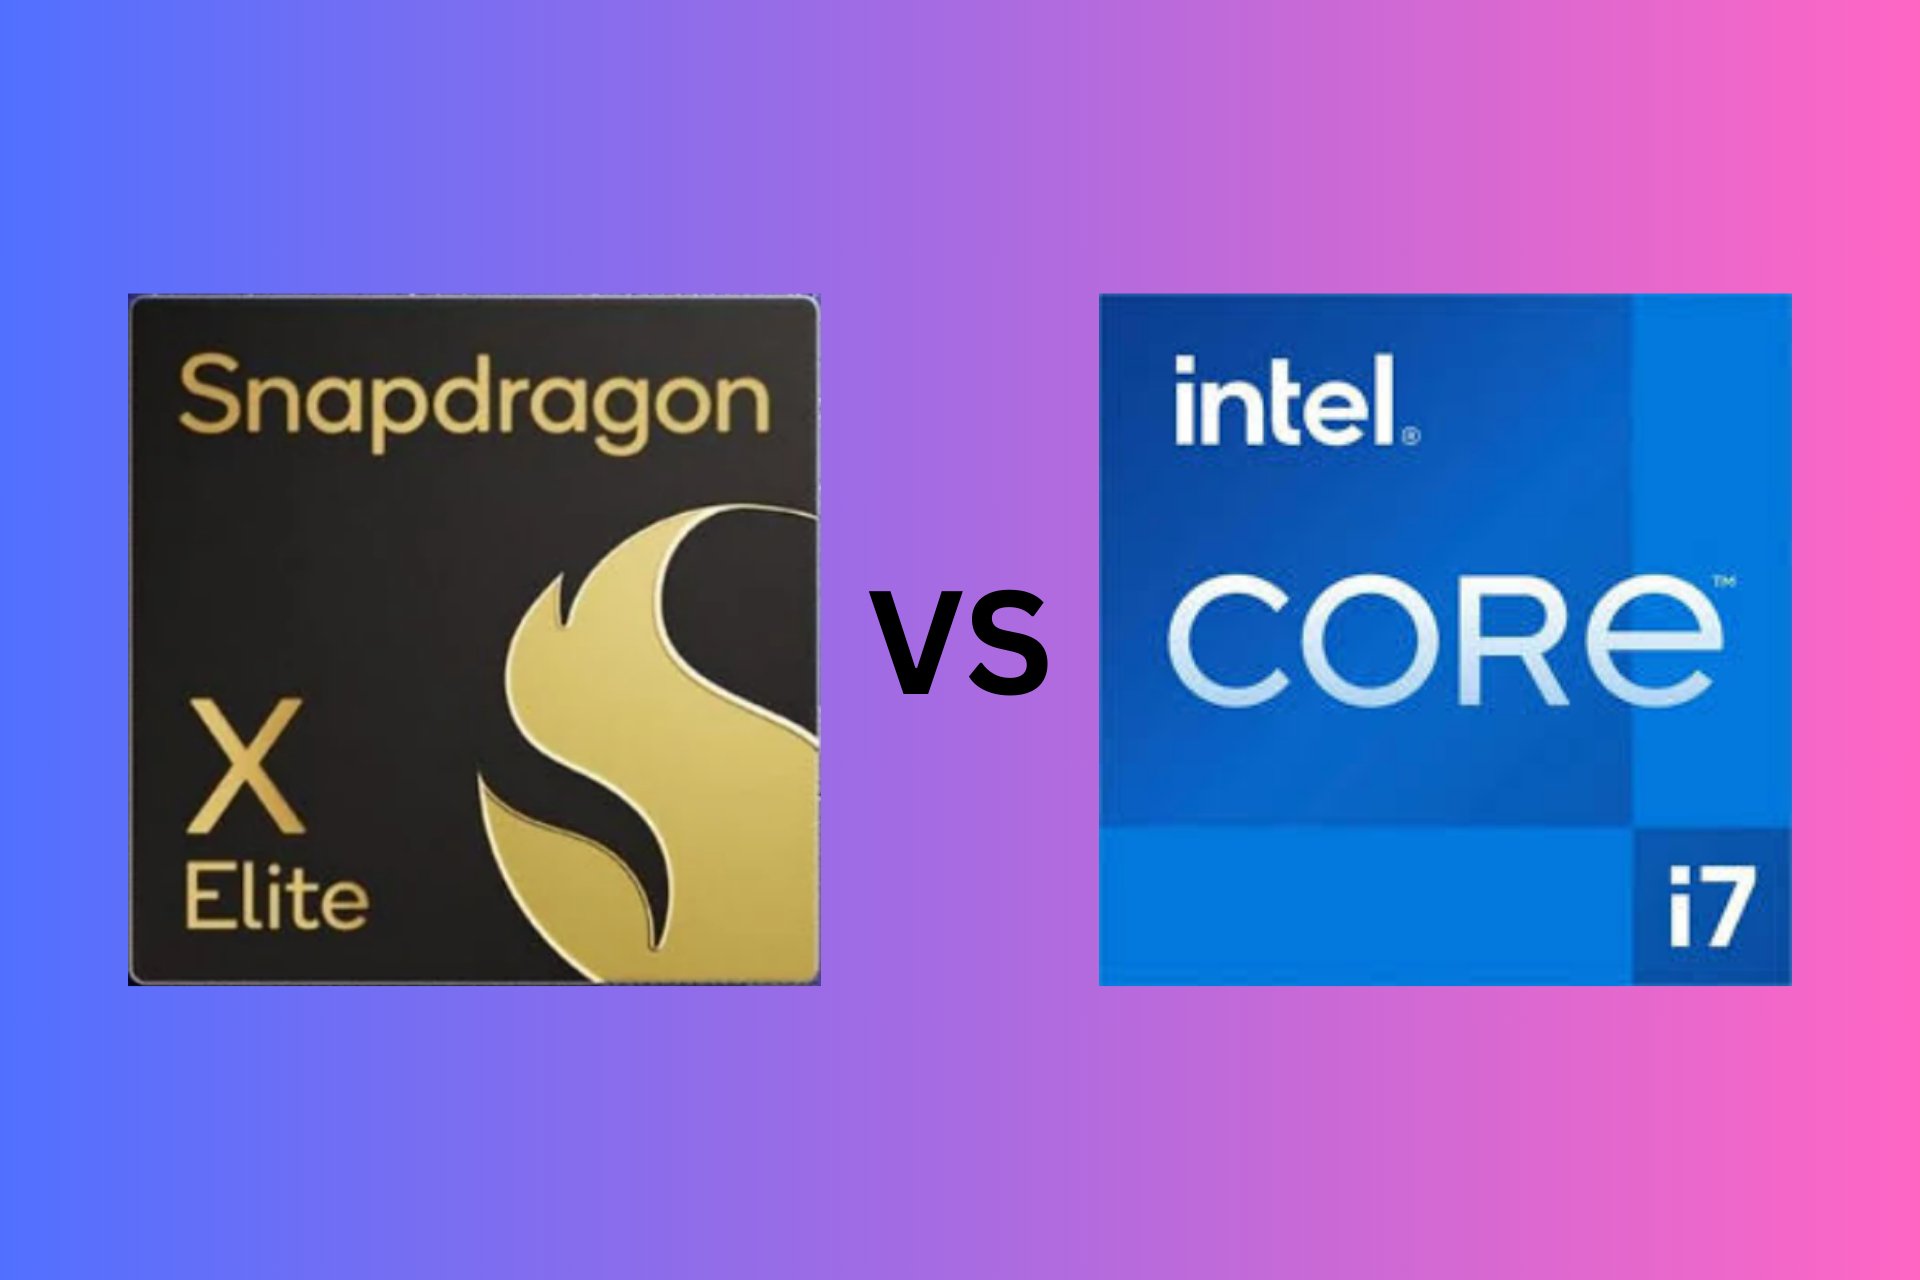 Snapdragon X Elite vs Intel Core i7 specs comparison